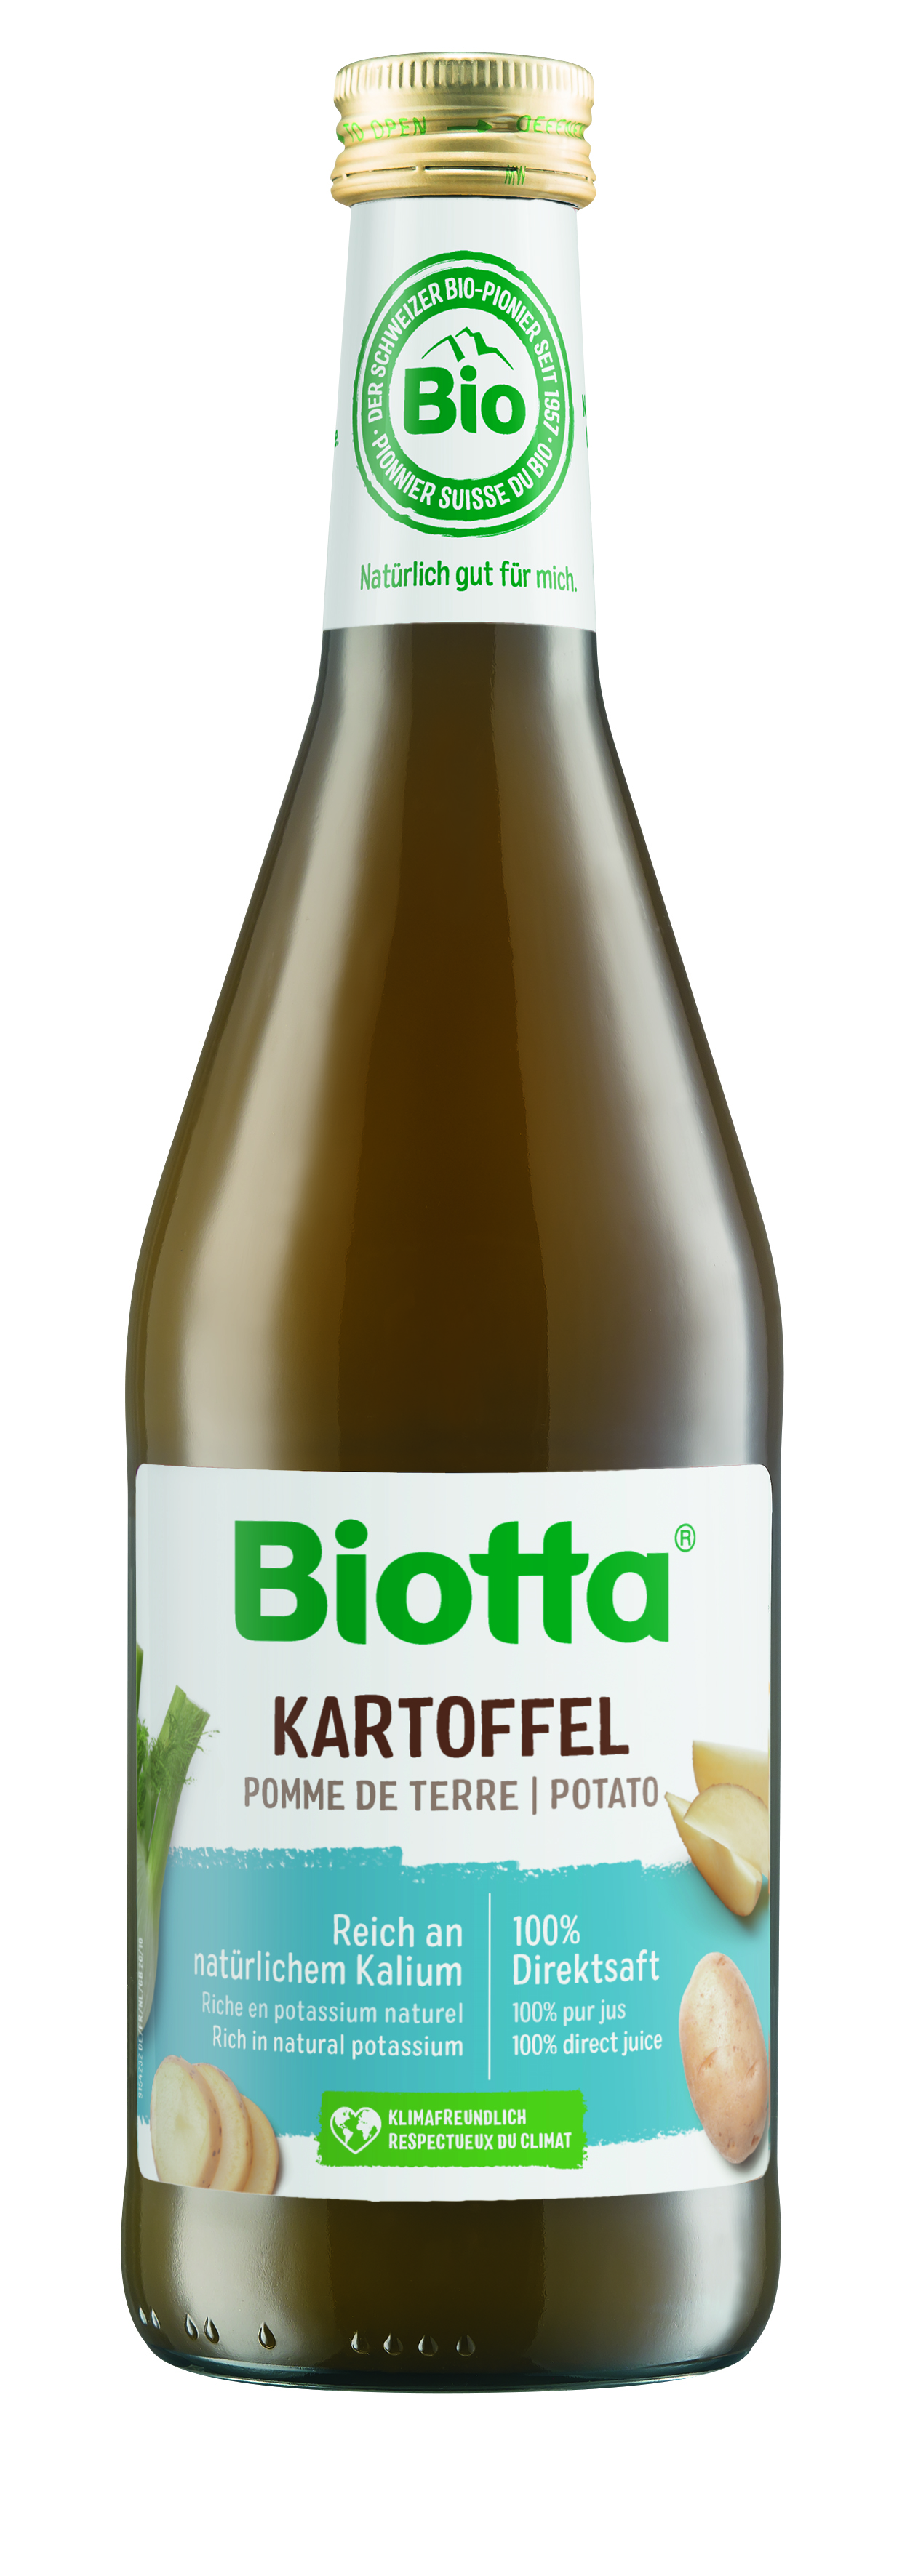 Biotta zemiaková šťava 5 kartónov - cena za 1 ks 4,338€ s DPH